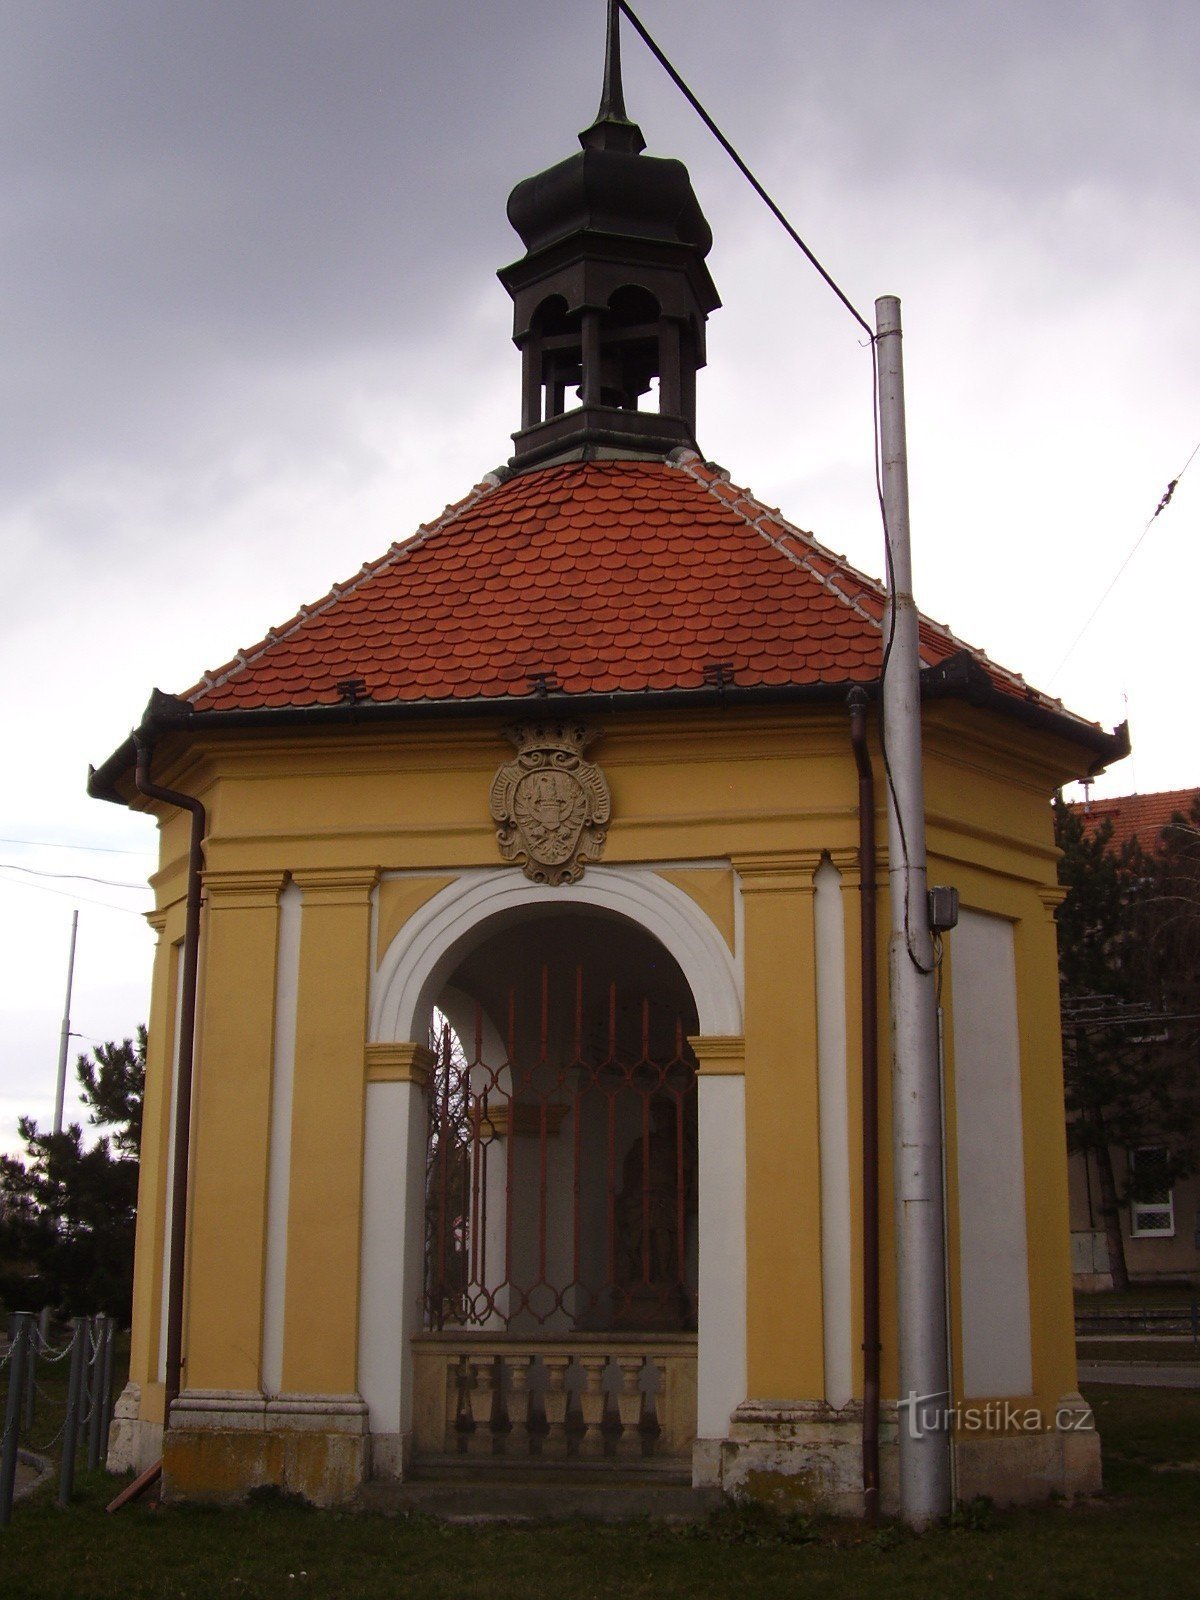 Small monuments of Brno-Slatina